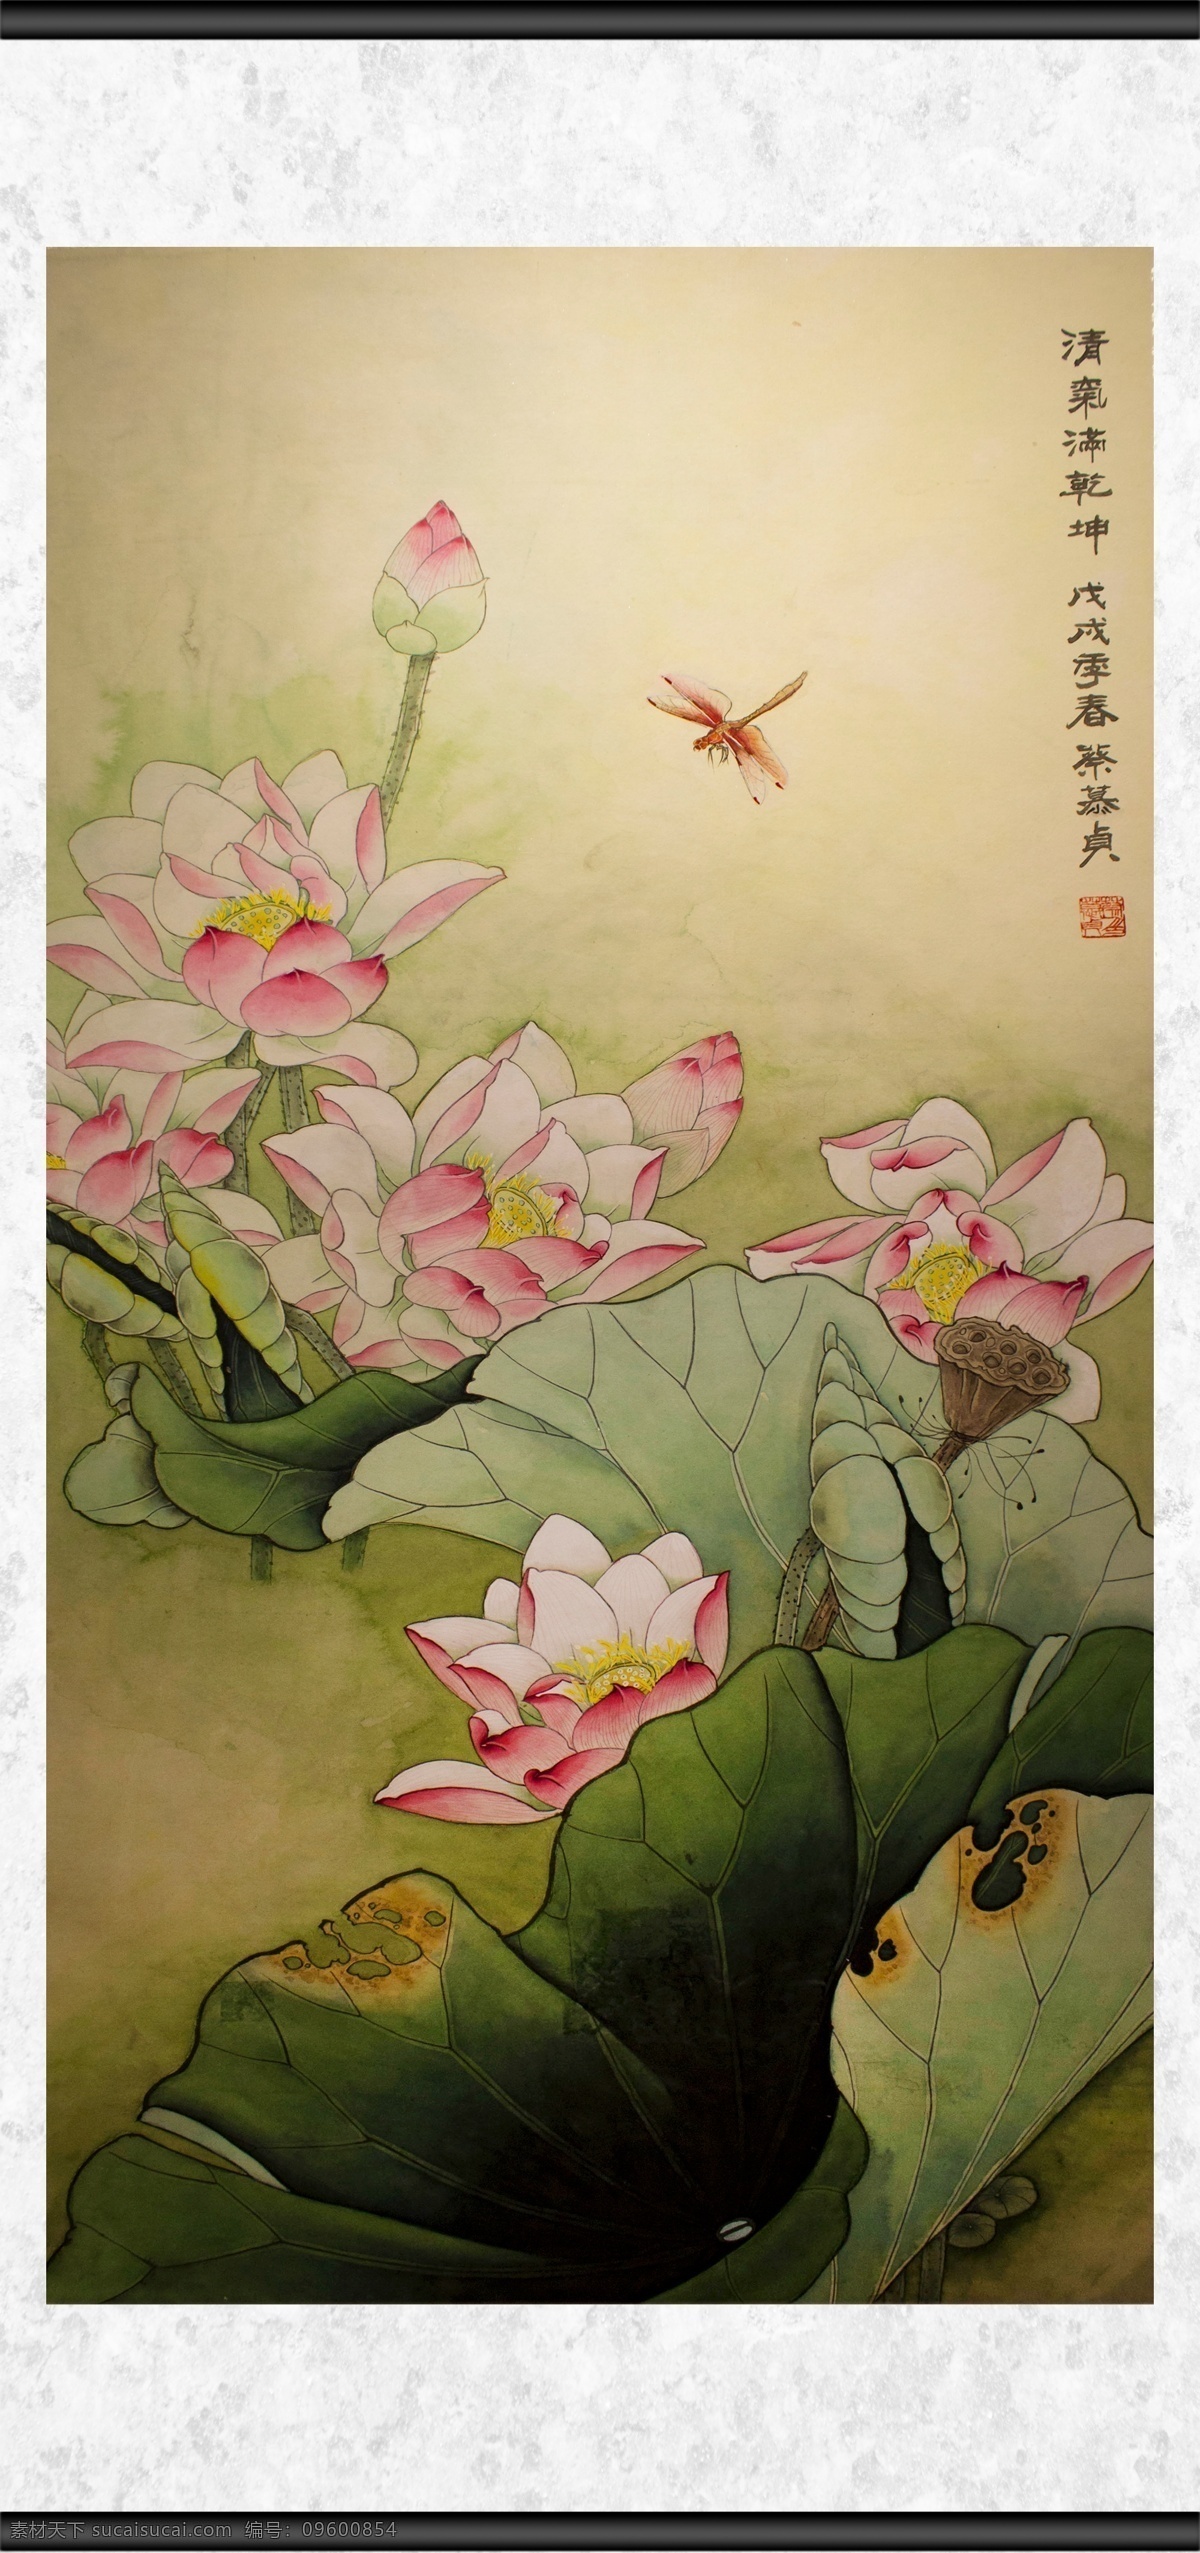 清气满乾坤 清气 满乾坤 植物 花卉 观赏 蜻蜓 荷塘 荷叶 绘画 文化艺术 传统文化